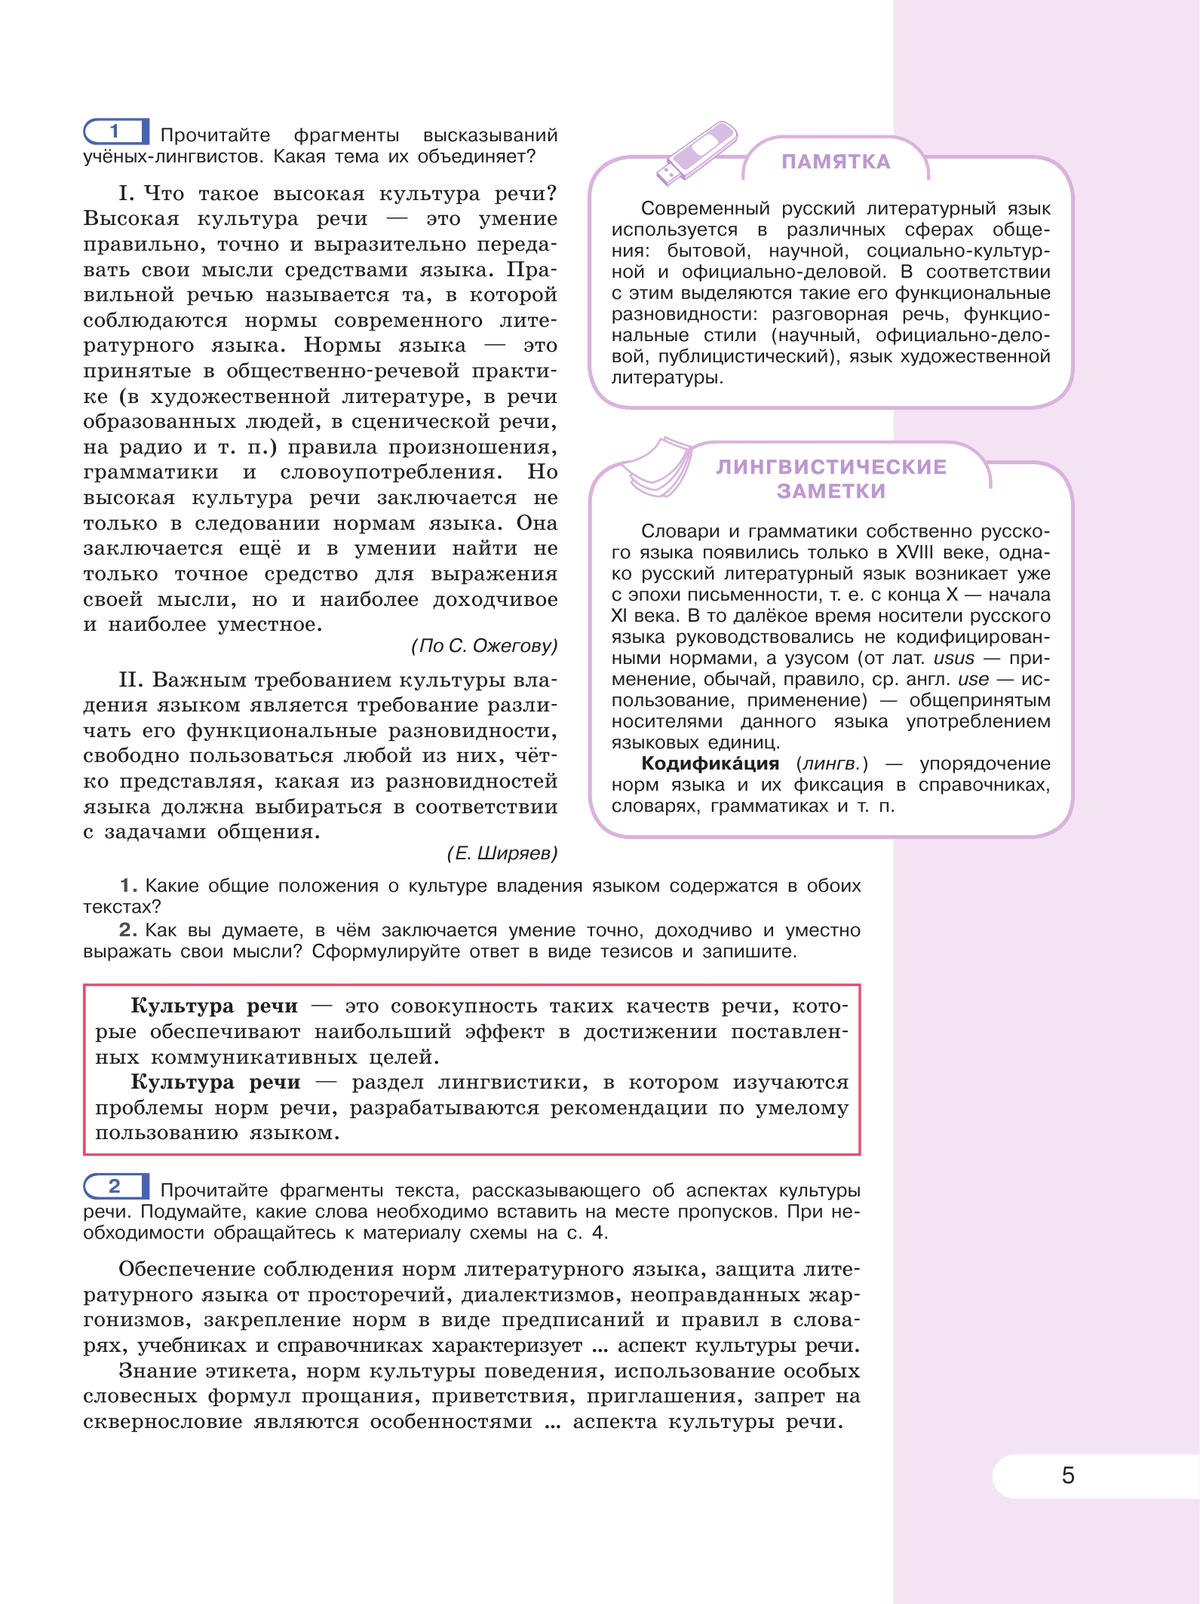 Русский язык. 8 класс. Учебник 3